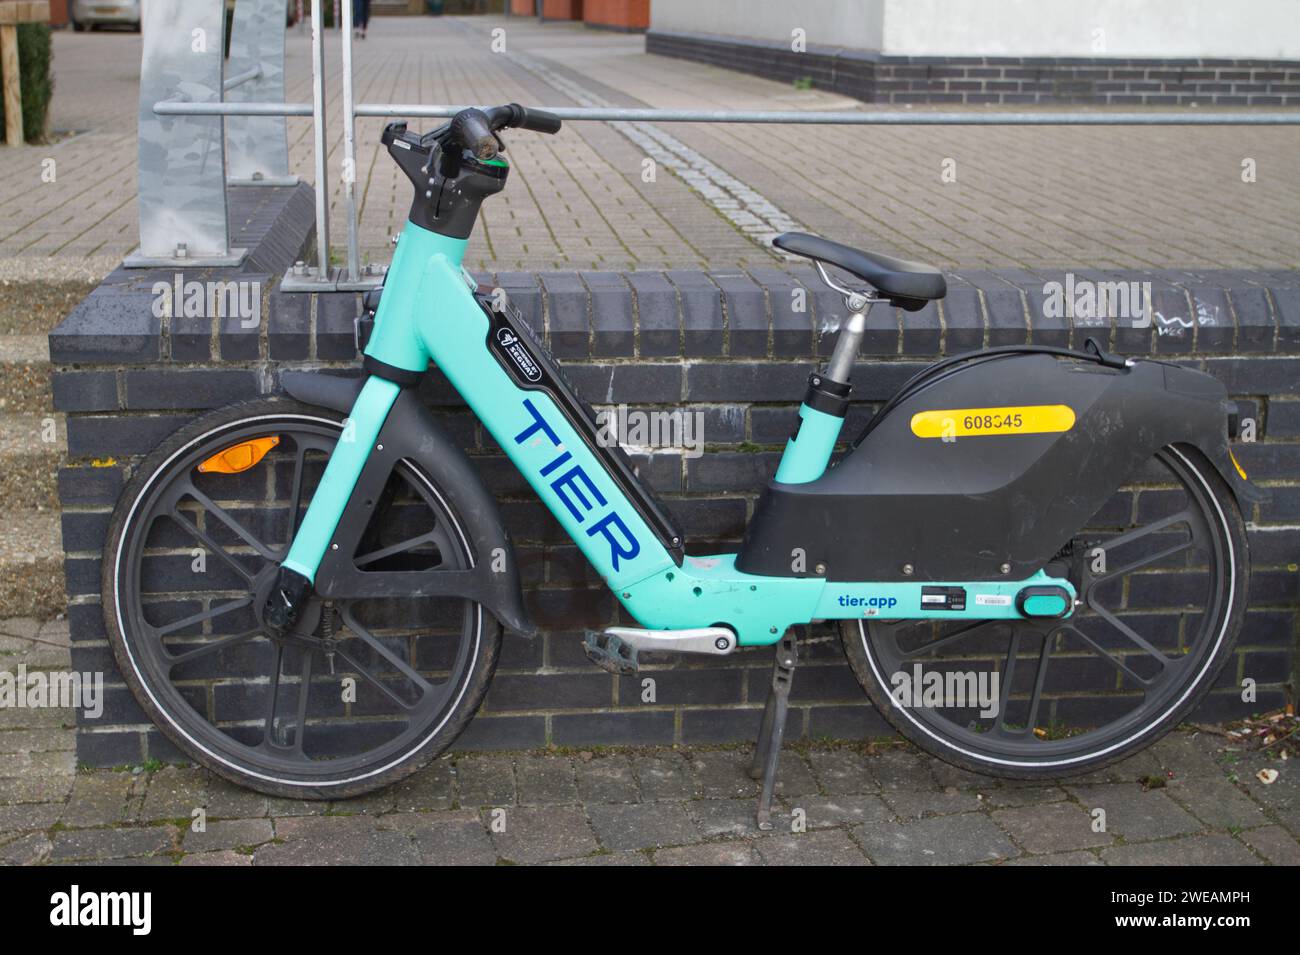 Ein E-Bike, das von TIER betrieben wird, einem Betreiber von Mikromobilität, der in Colchester, Essex, E-Bikes eingesetzt hat, um längere Fahrten in der Stadt zu erleichtern. Stockfoto